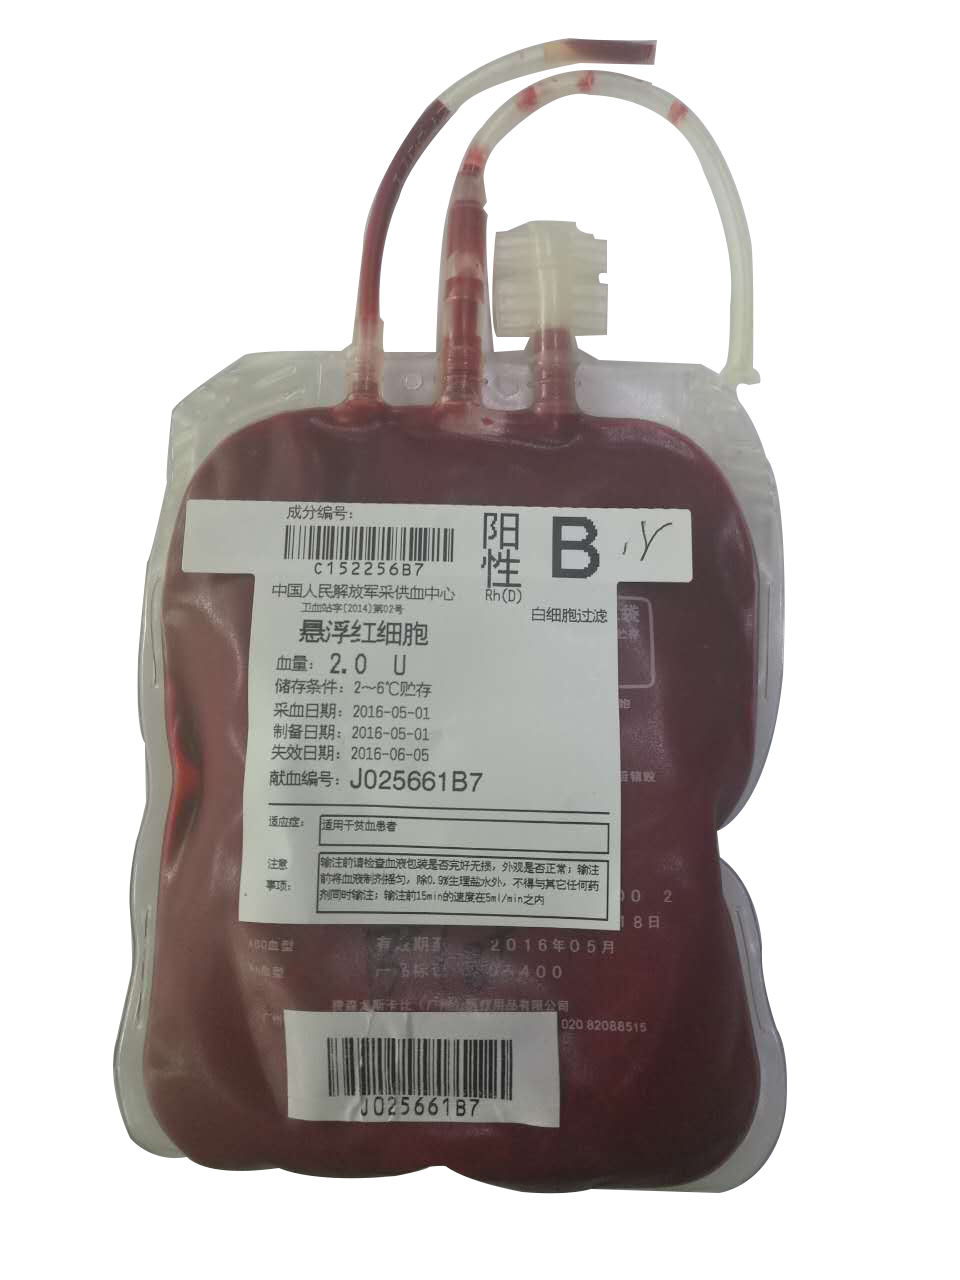 「宏诚创新」推动血液物联网技术普及，或将实现血液全程质量管理跟踪